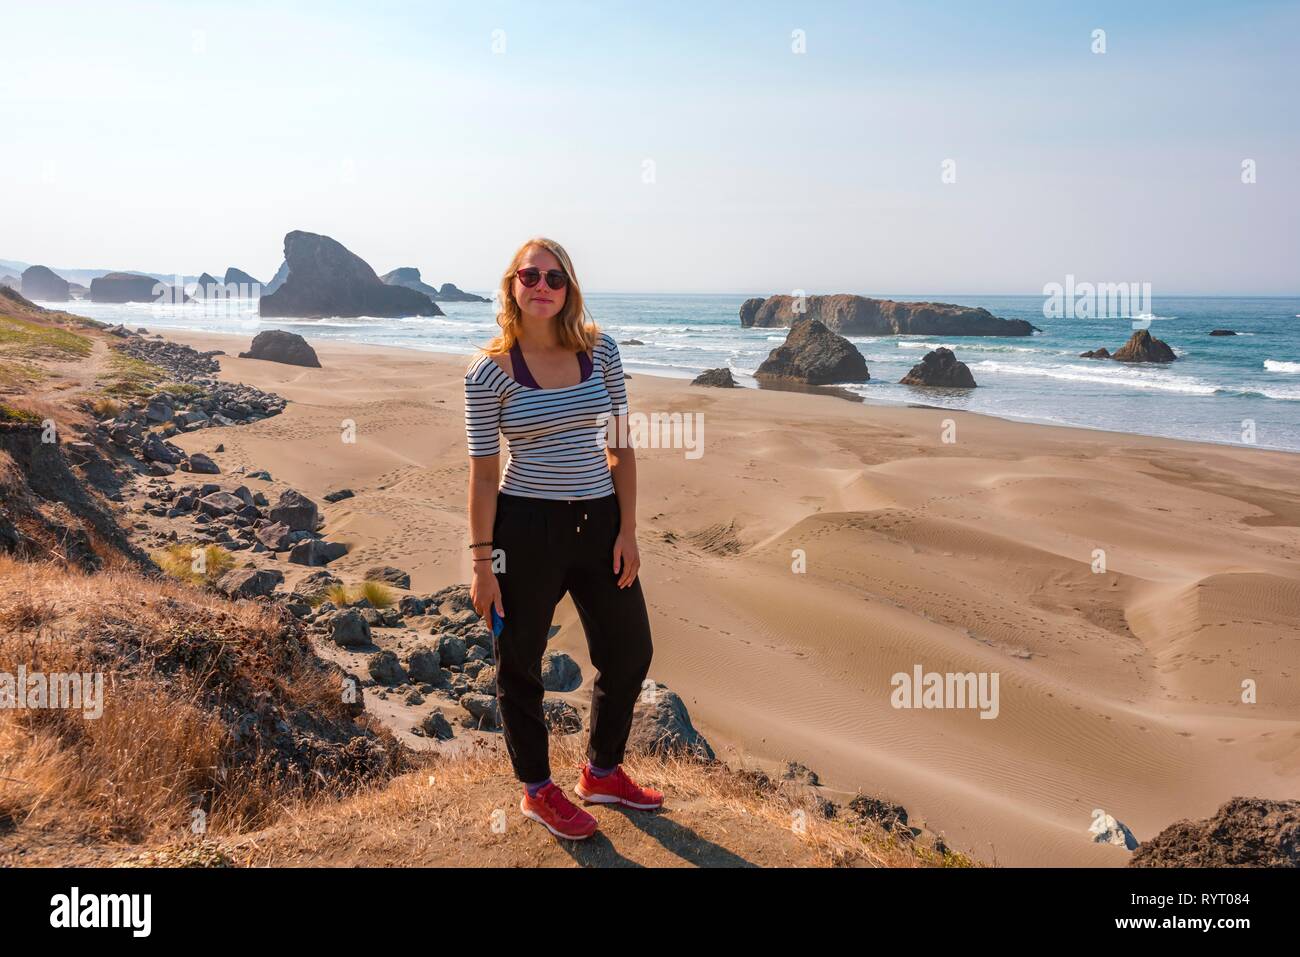 Giovane donna che guarda verso la fotocamera, spiaggia di sabbia e la costa con aspre rocce, Myers Creek Beach Viewpoint, Oregon, Stati Uniti d'America Foto Stock